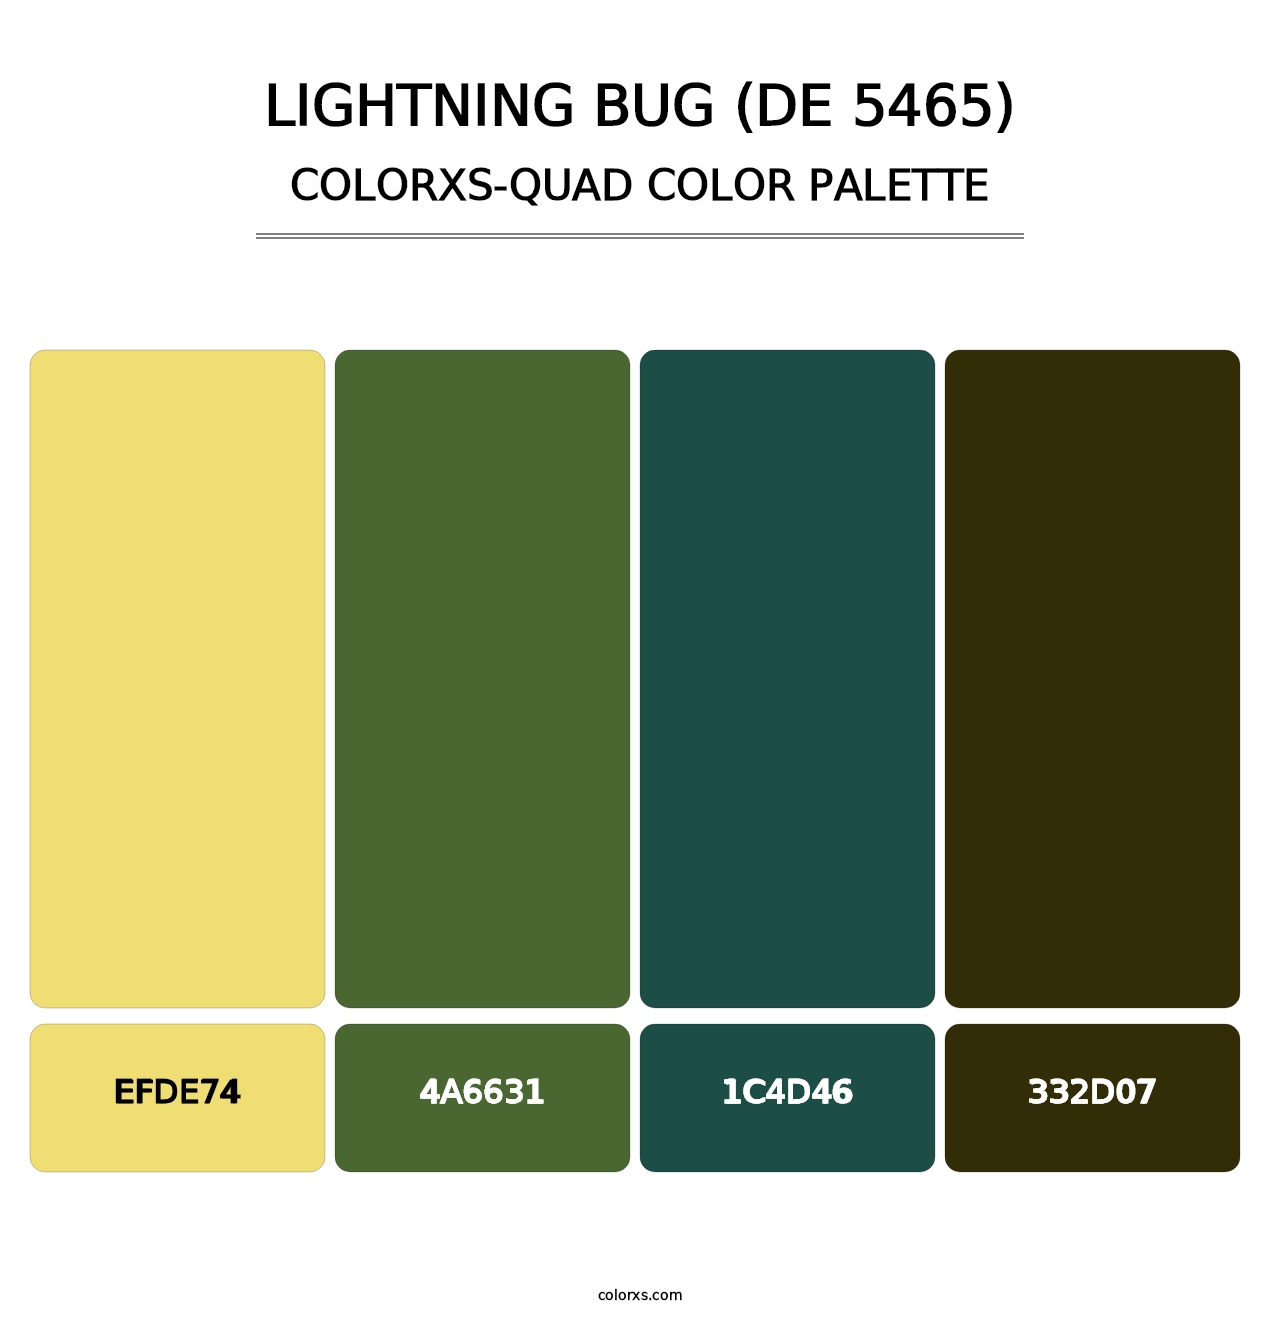 Lightning Bug (DE 5465) - Colorxs Quad Palette